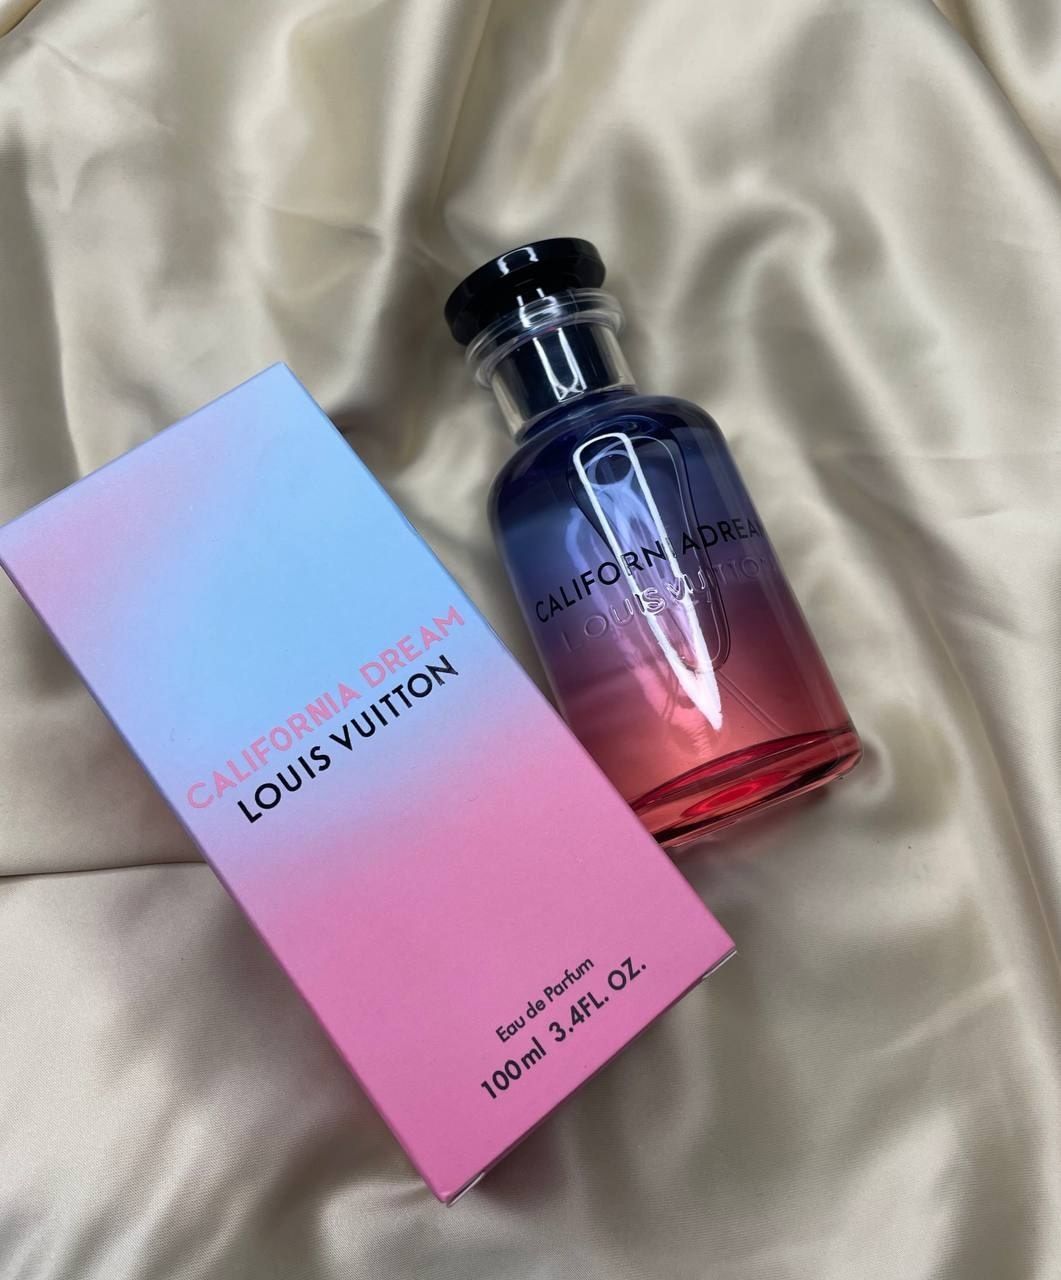 Louis Vuitton California Dream Eau de Parfum, 3.4 fl oz., New in